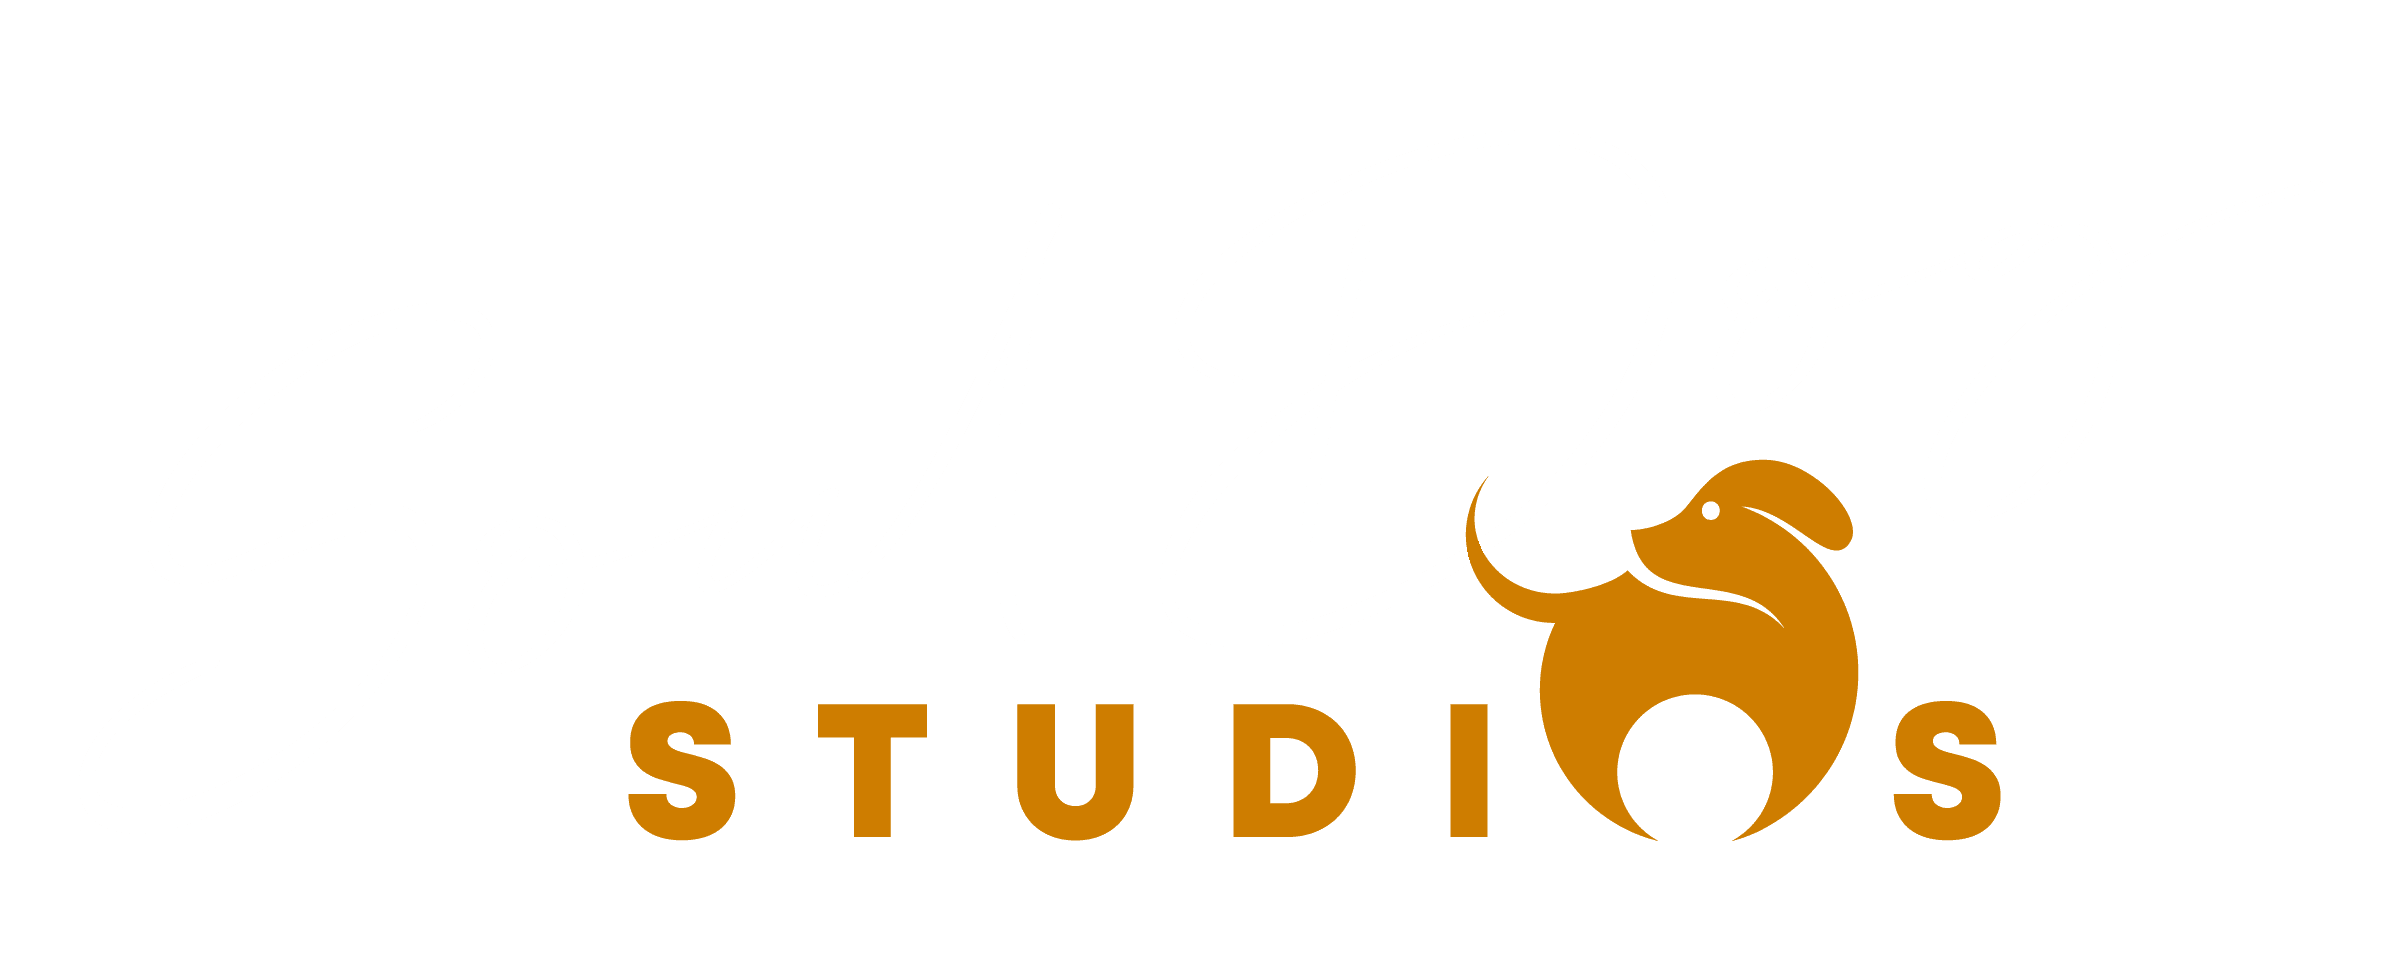 Soul Dog studios logo